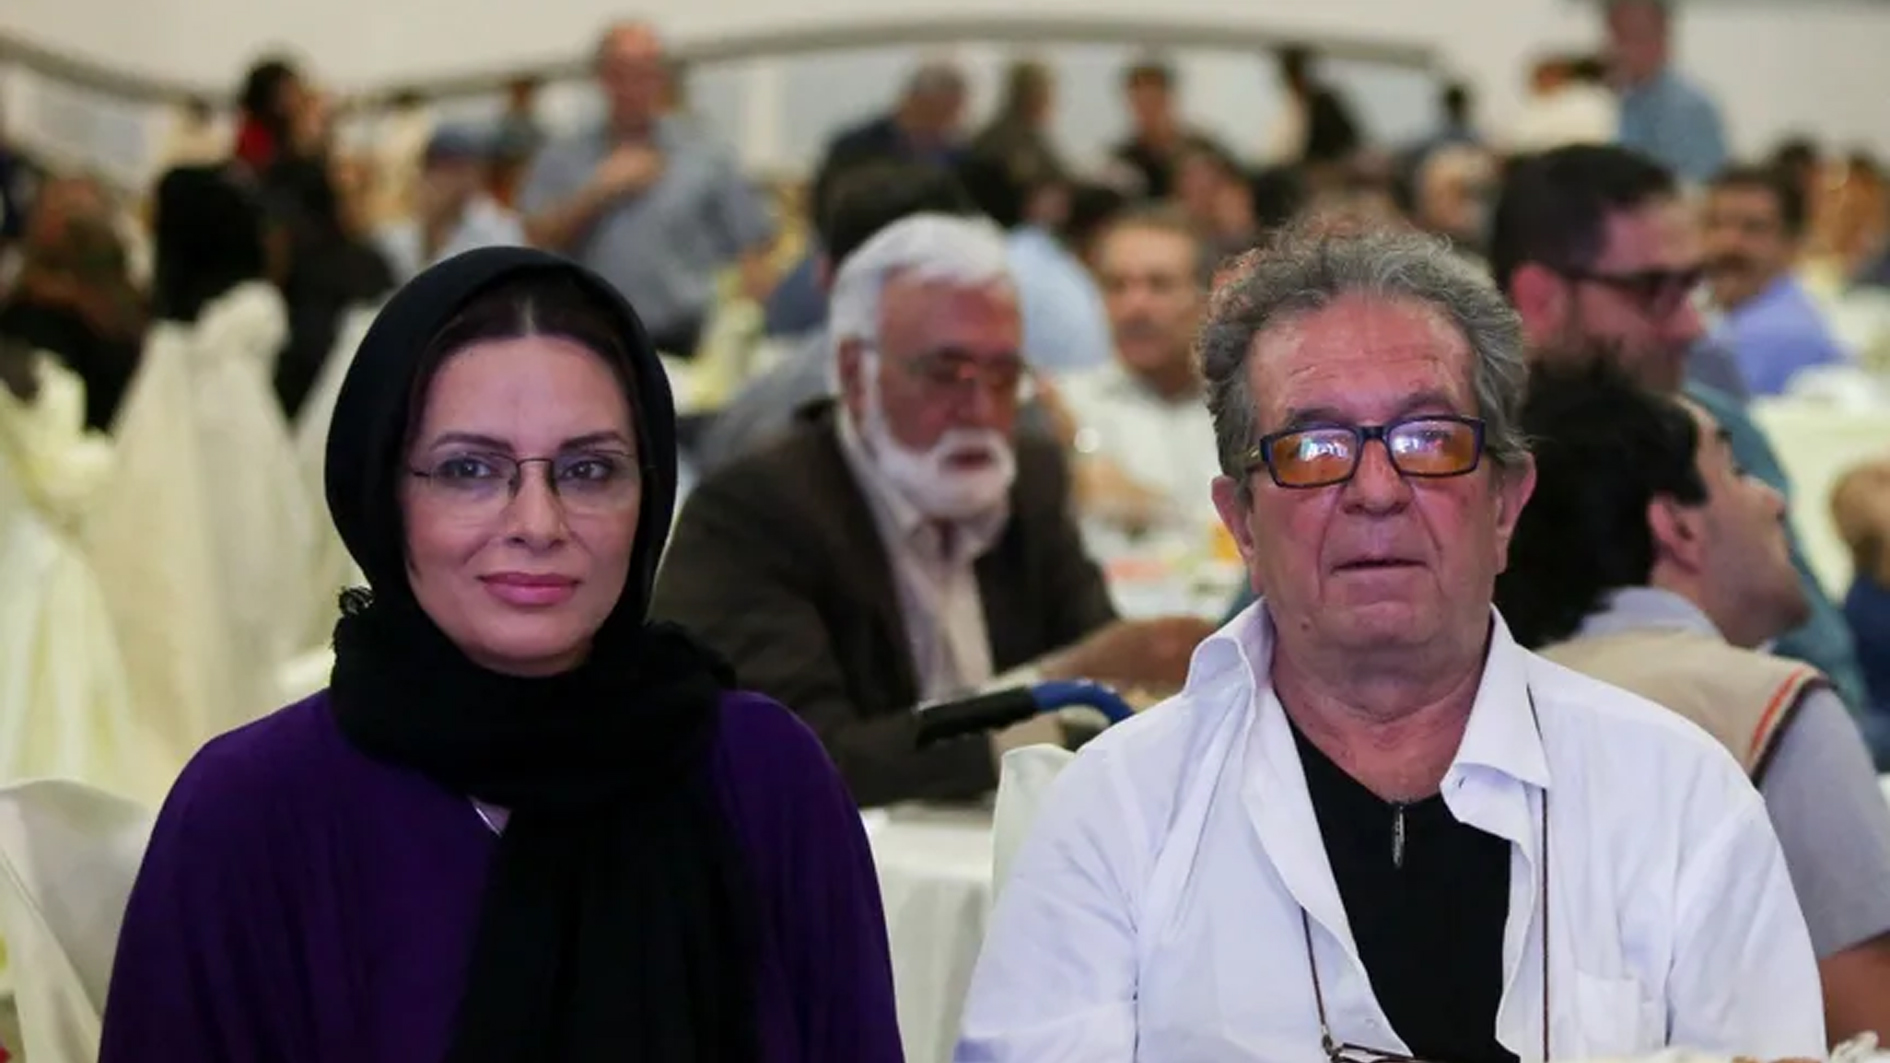 المخرج السينمائي الإيراني داريوش مهرجوي وزوجته وحيدة محمدي فر يحضران حفلًا في طهران، 1 يوليو 2015. - أ ف ب